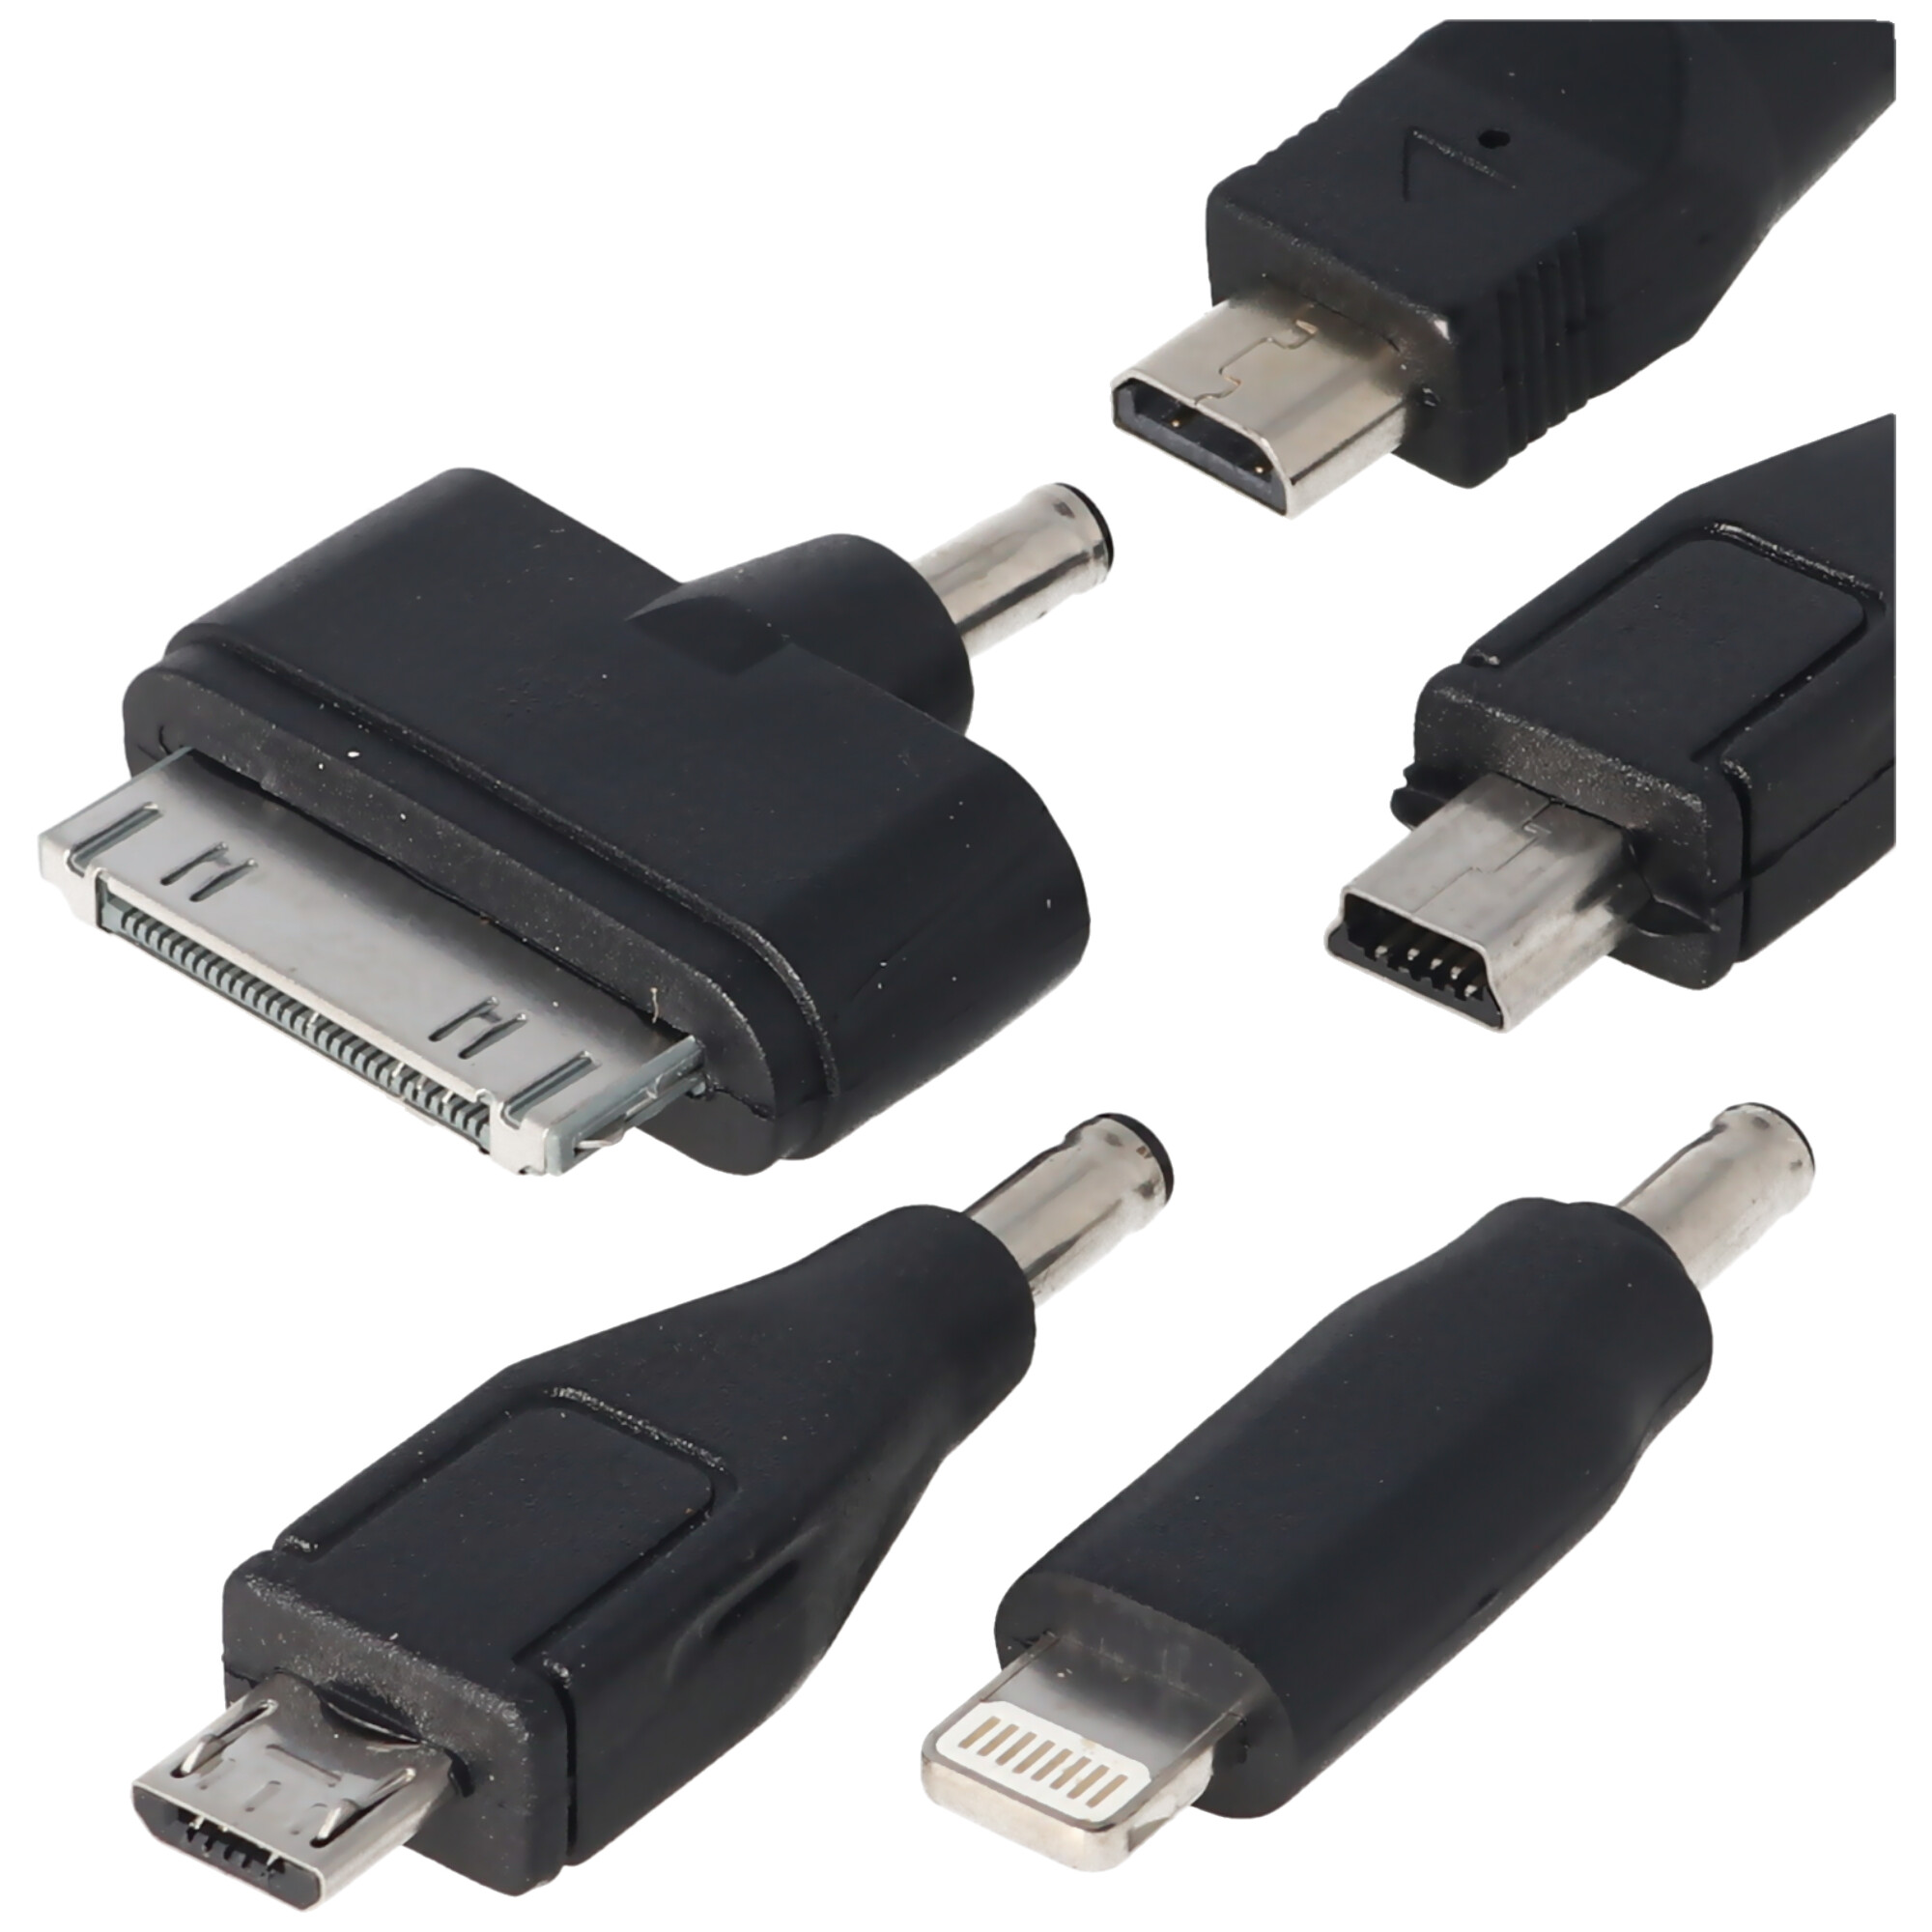 12 Volt USB Ladegerät 5-teilig mit Stecker Micro-USB, Mini-USB, für iPhone 3, 4, 5, 6 und NDS, Kabellänge 1,1 Meter